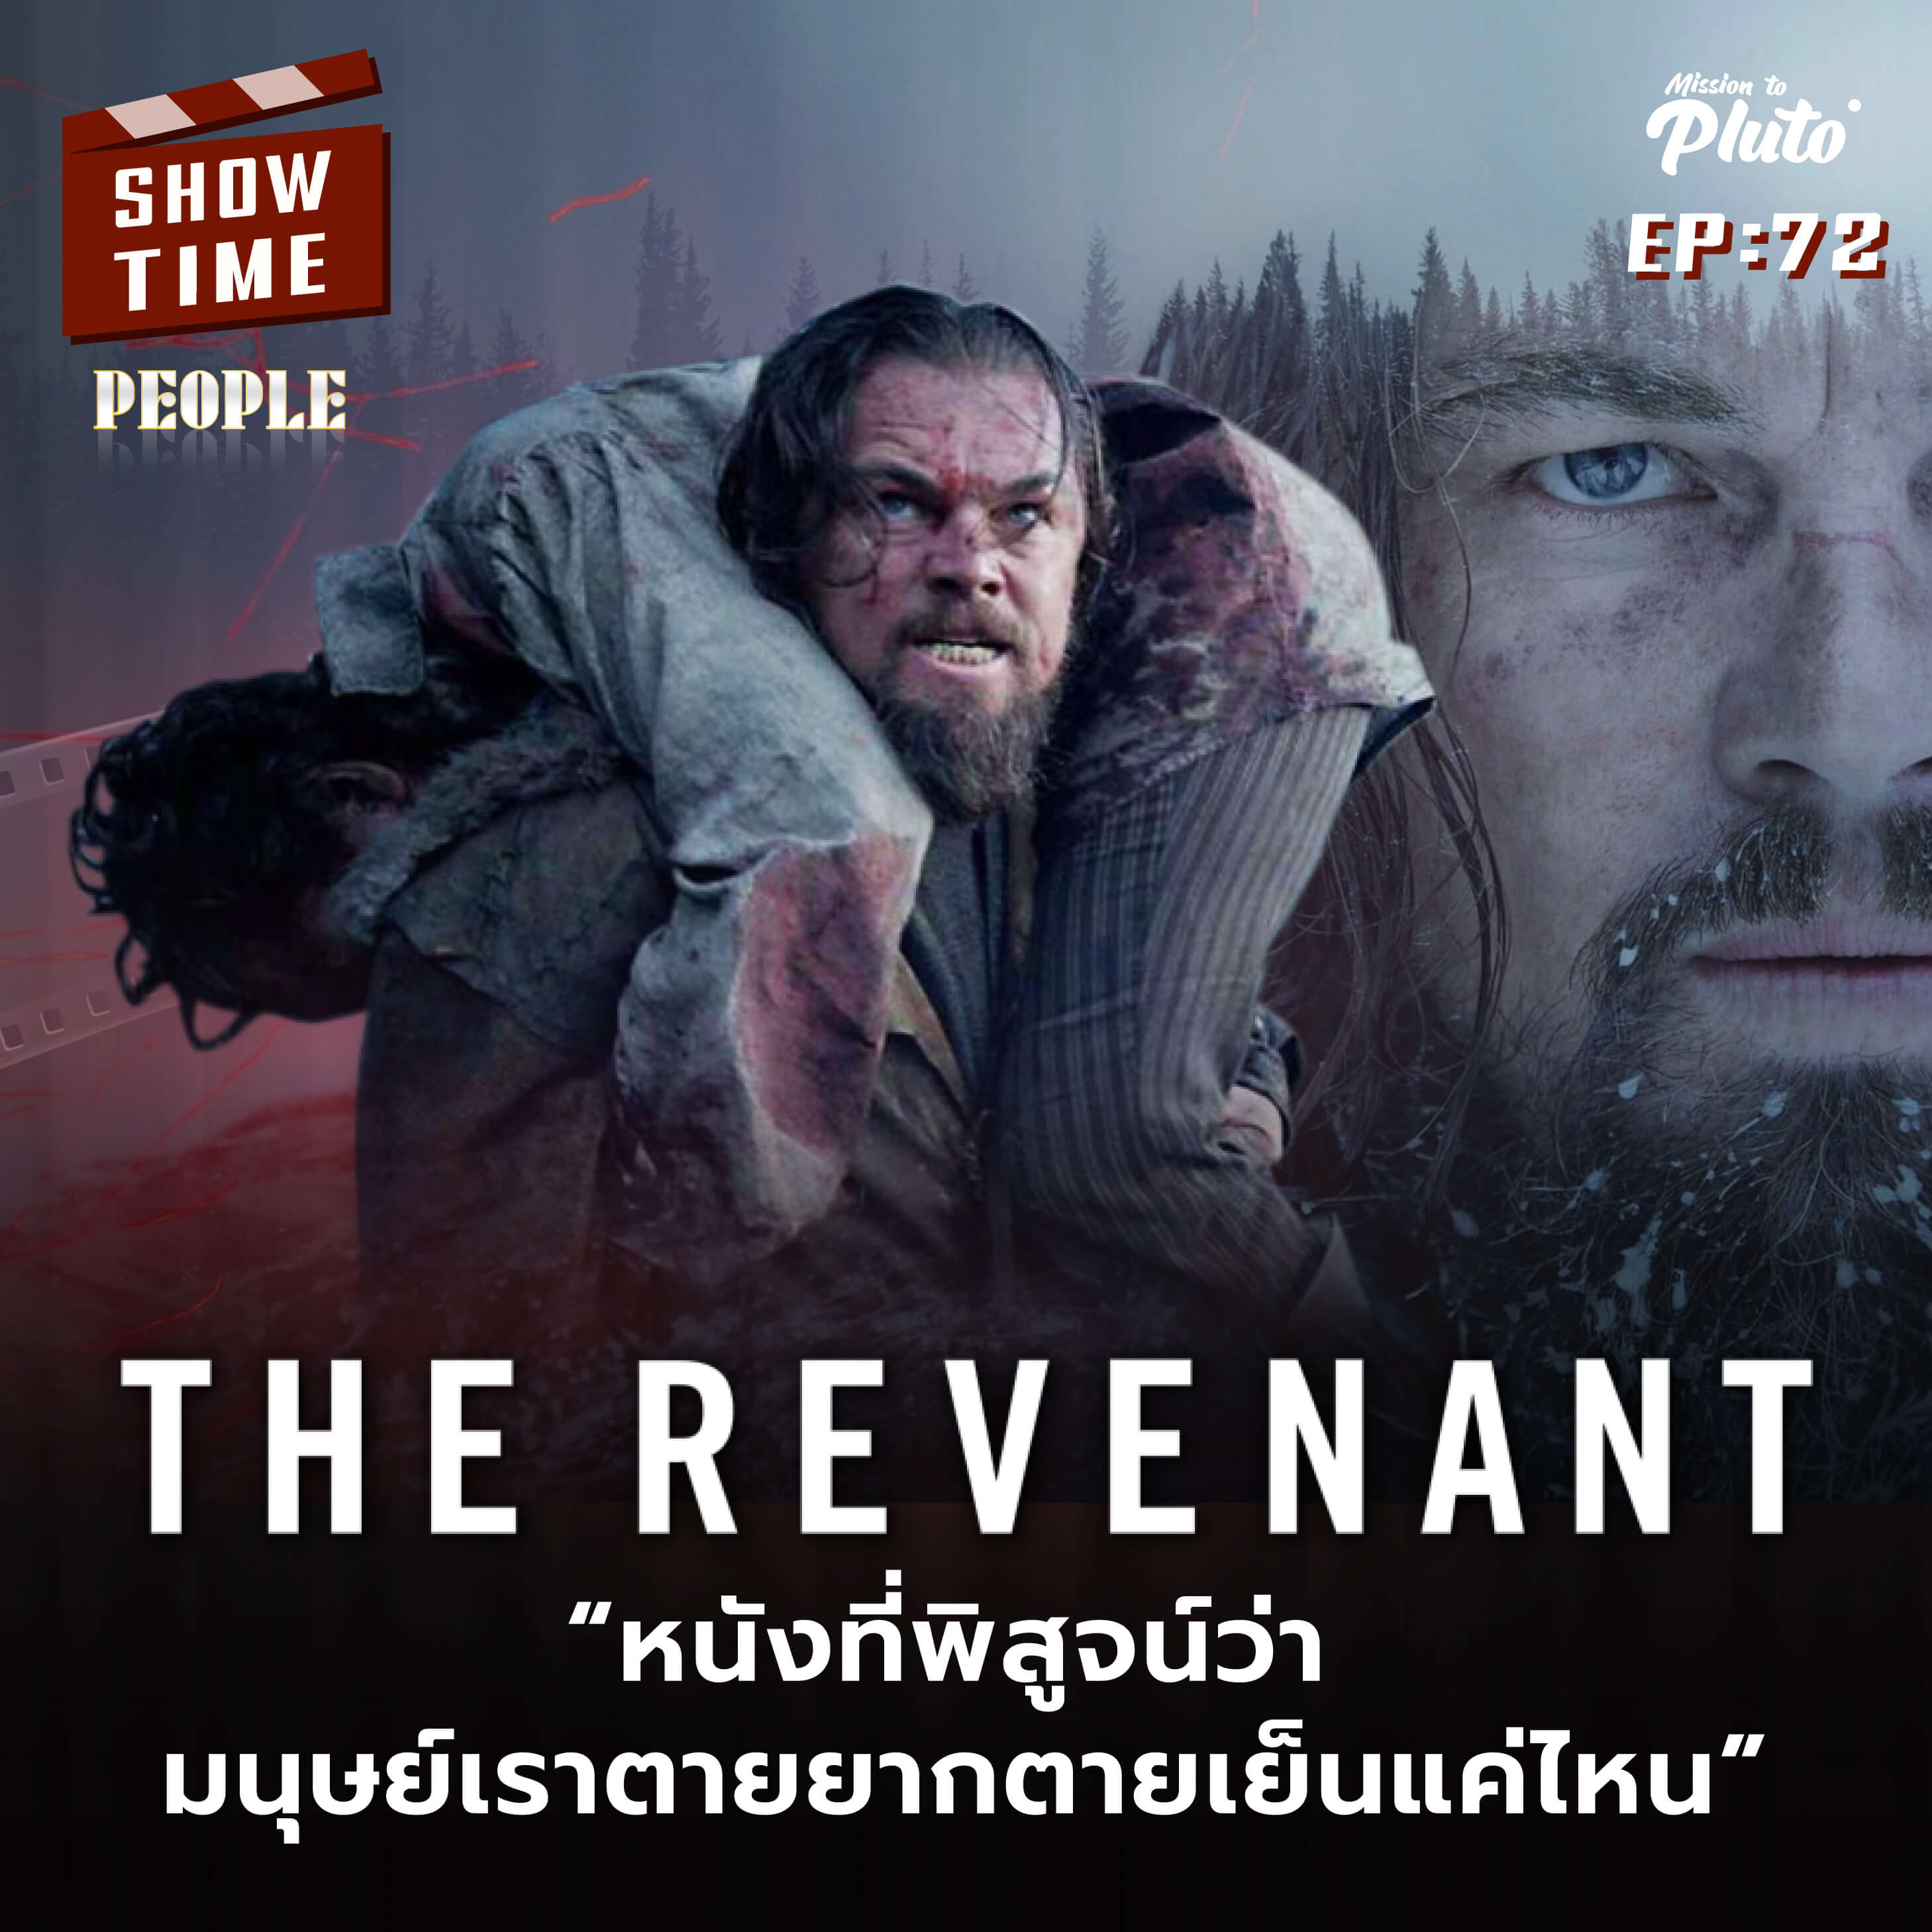 The Revenant  หนังที่พิสูจน์ว่า  มนุษย์เราตายยากตายเย็นแค่ไหน  | Show Time EP.72